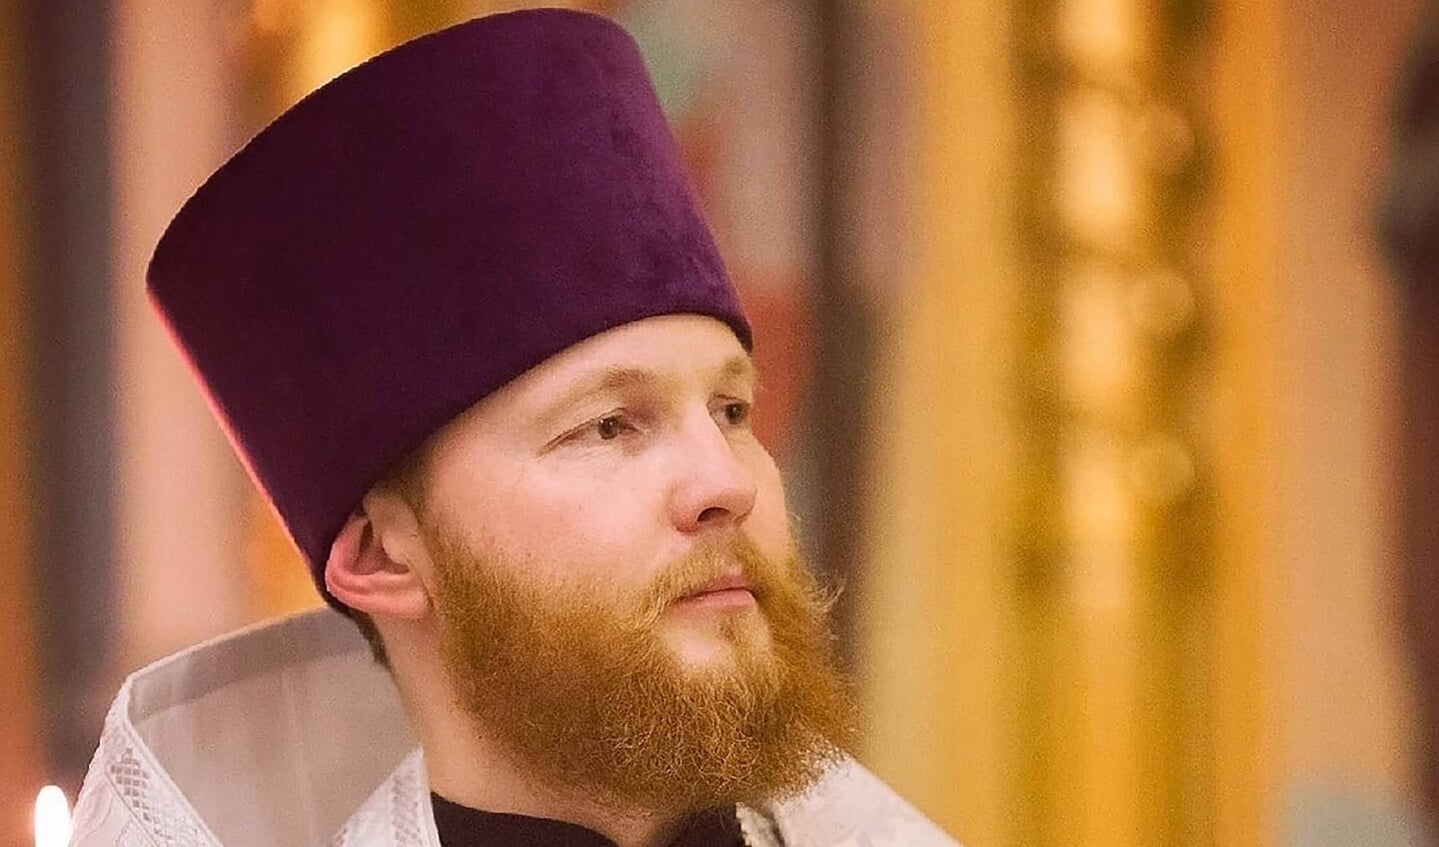 Vader Georgi (35) is een Russische priester die kritisch was op Poetin. Inmiddels is hij pakketbezorger in Polen.